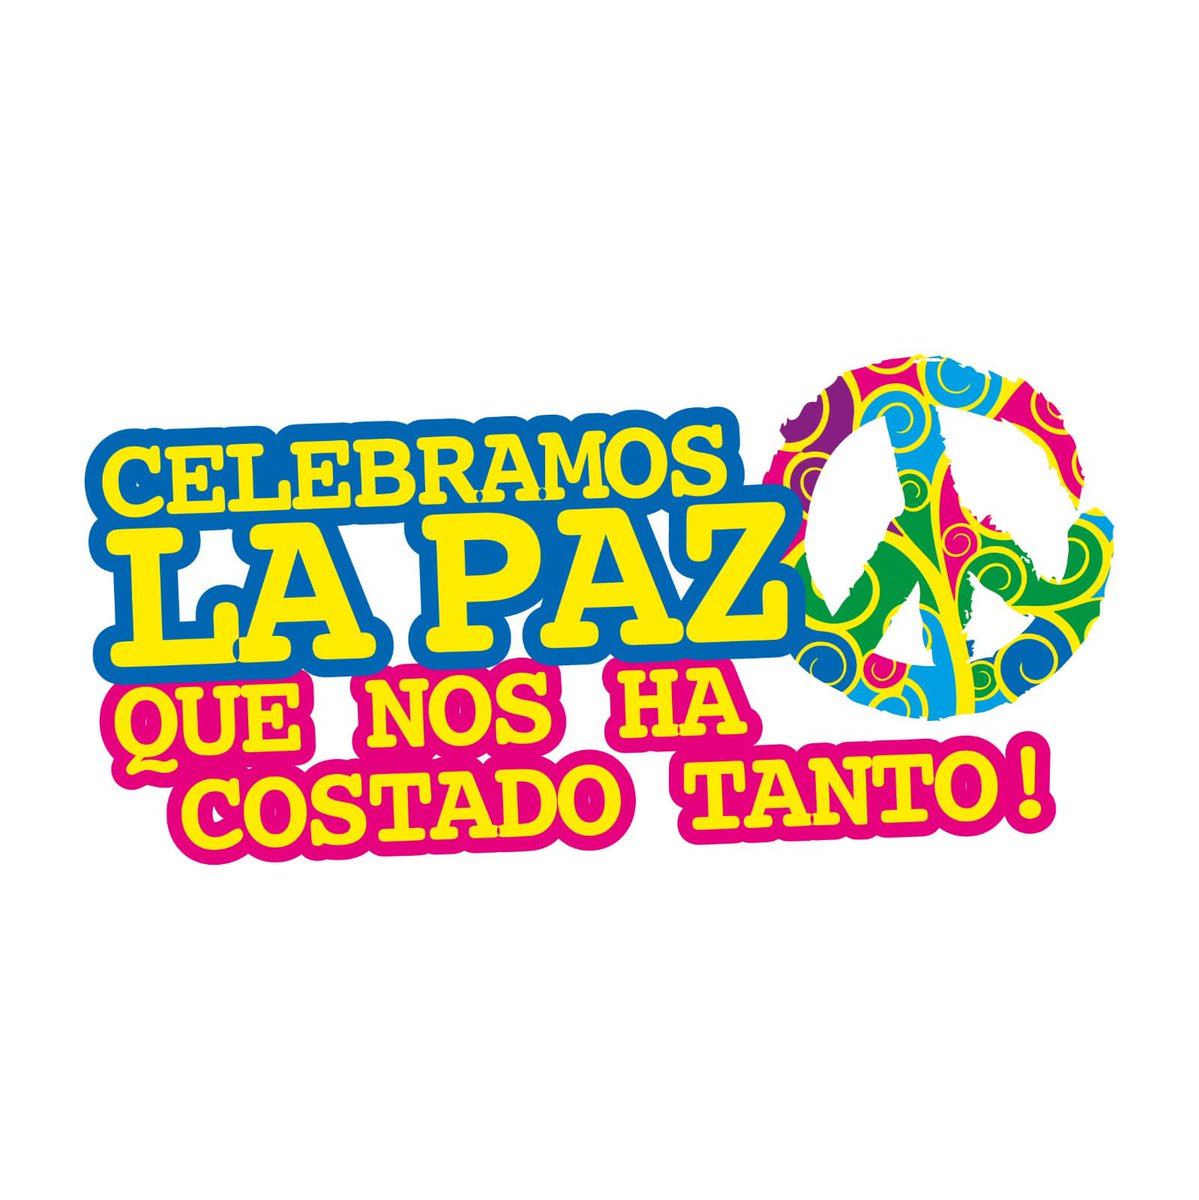 💥🇳🇮🕊En Paz y Unidad seguimos cambiando Nicaragua, libre y soberana

#4519LaPatriaLaRevolución
#UnidosEnVictorias 

@RDRFSLN_ @LaZelayita @Ku1989Paul